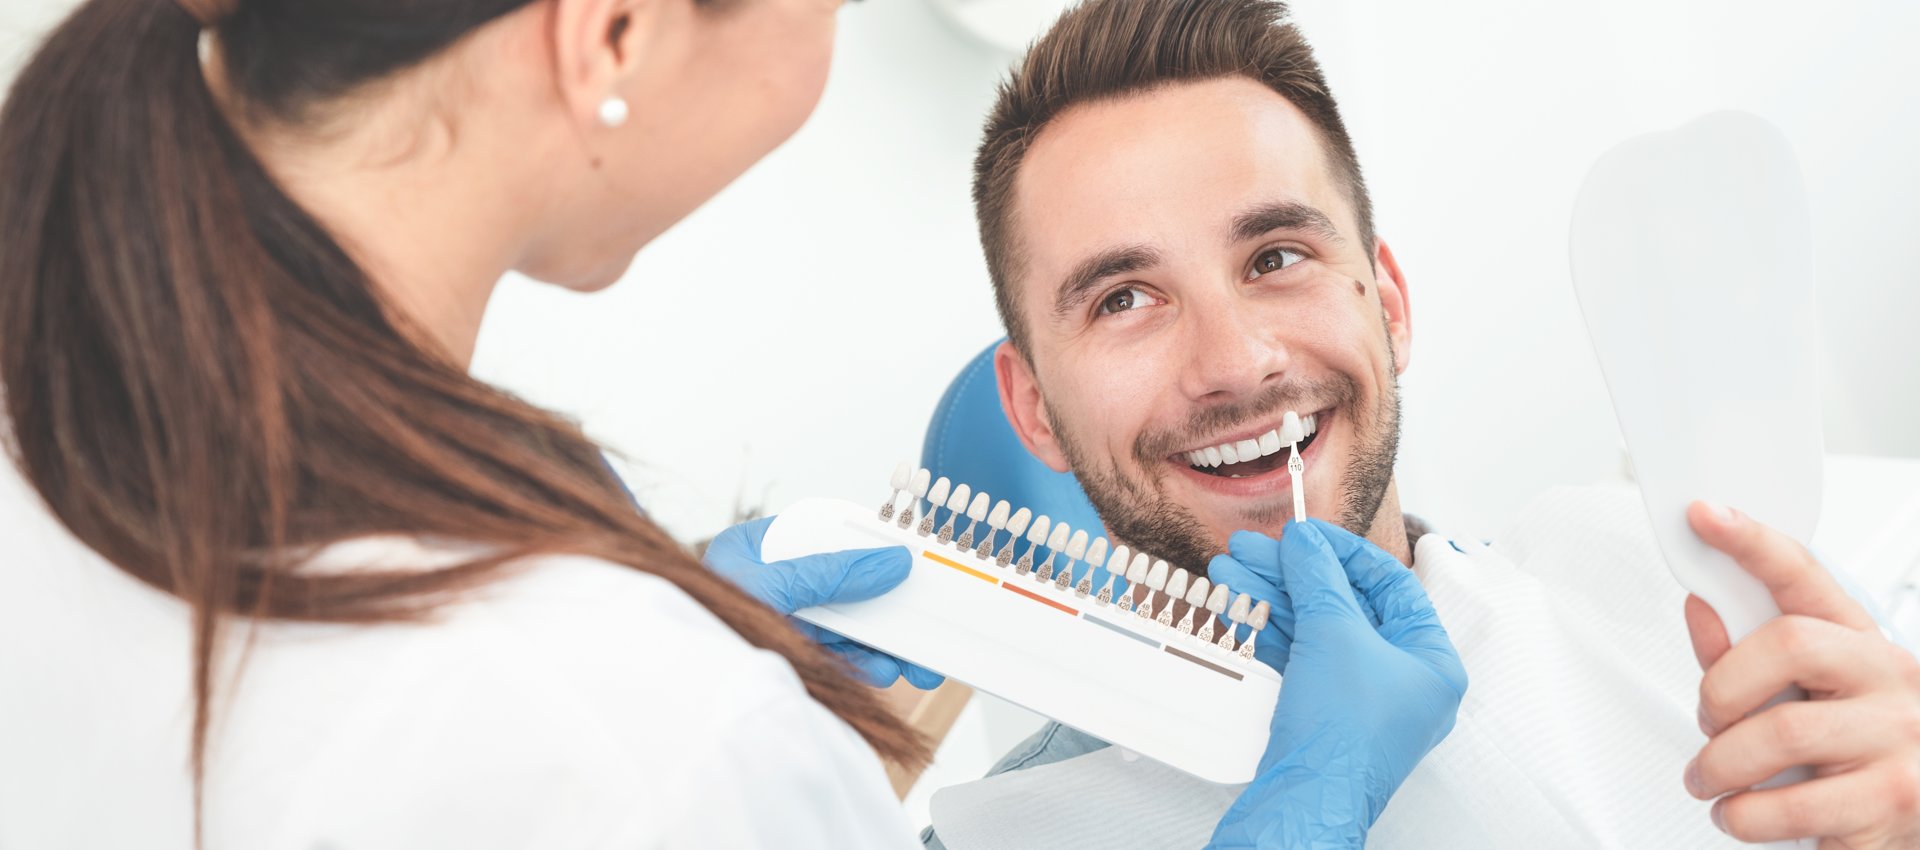 Zahnerhaltung und schöne Zähne dank volldigitaler Zahnmedizin